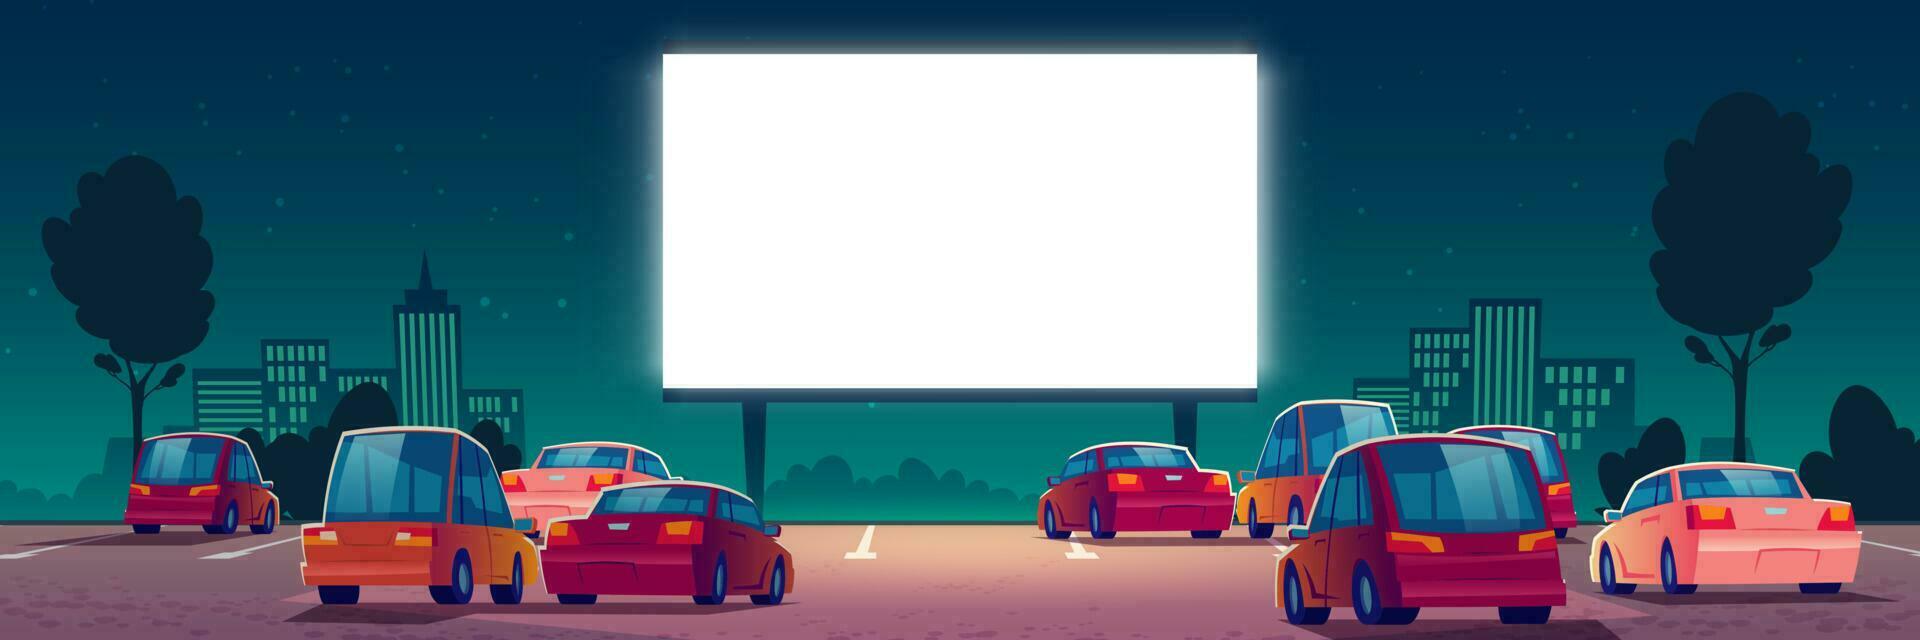 al aire libre cine, conducir en película teatro con carros vector